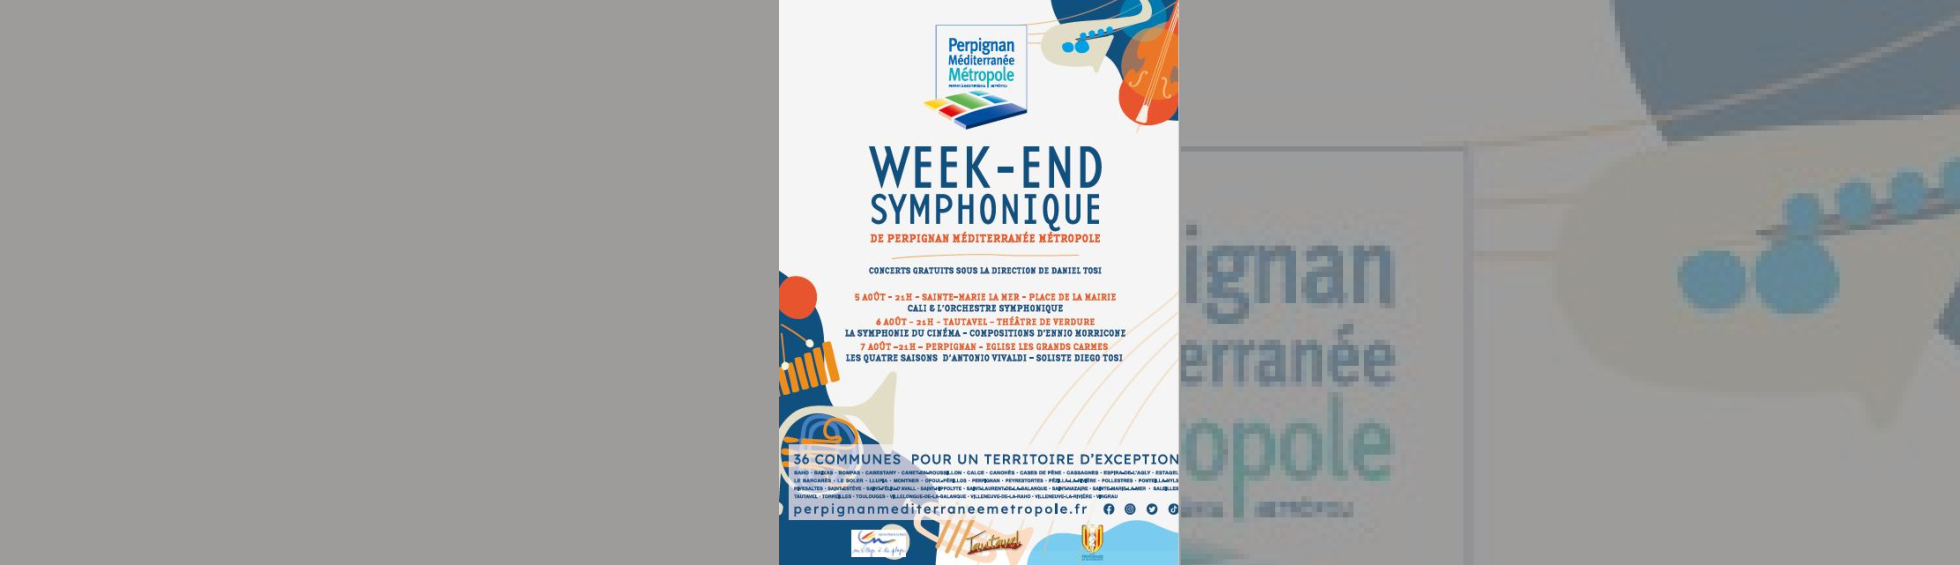 Week-end symphonique de Perpignan Méditerranée Métropole